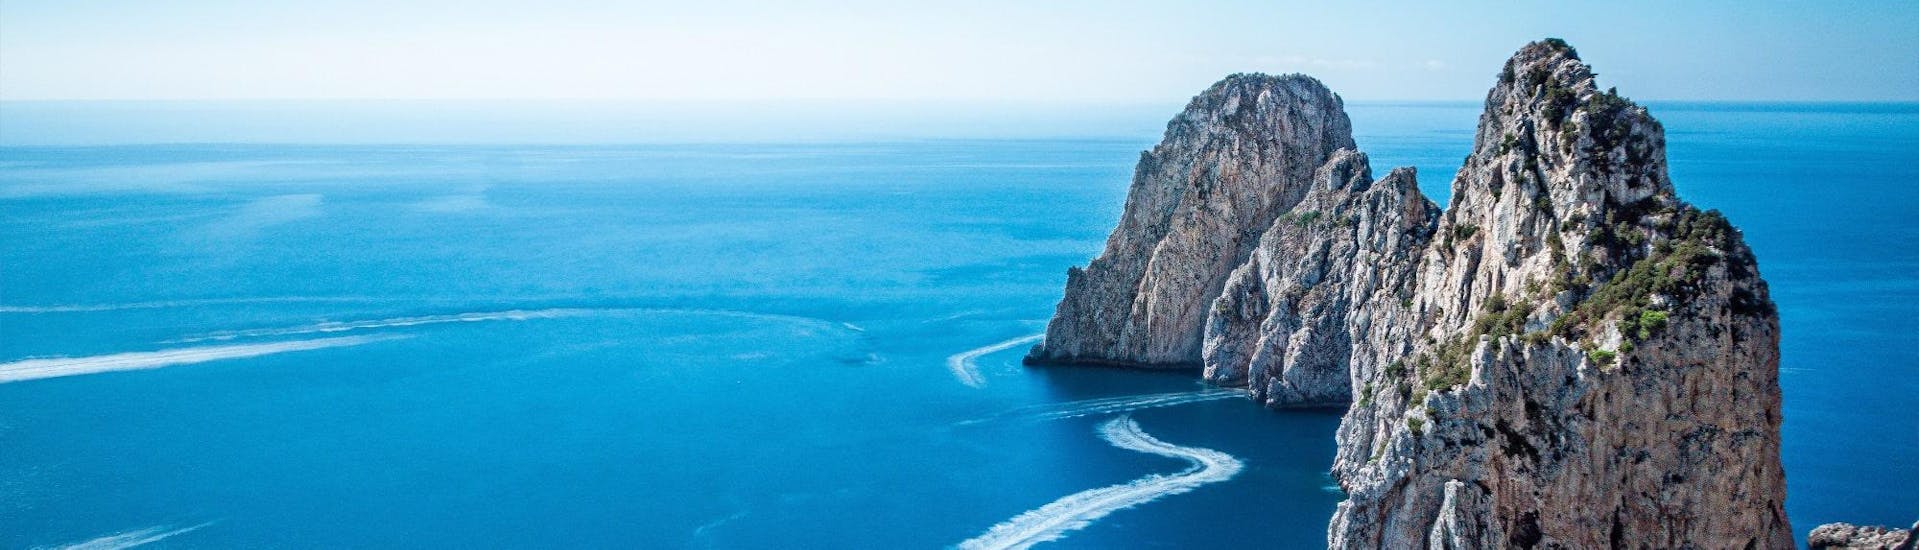 Grande immagine dei Faraglioni che possono essere ammirati durante la gita in barca da Sorrento a Capri, inclusa la Grotta Azzurra.